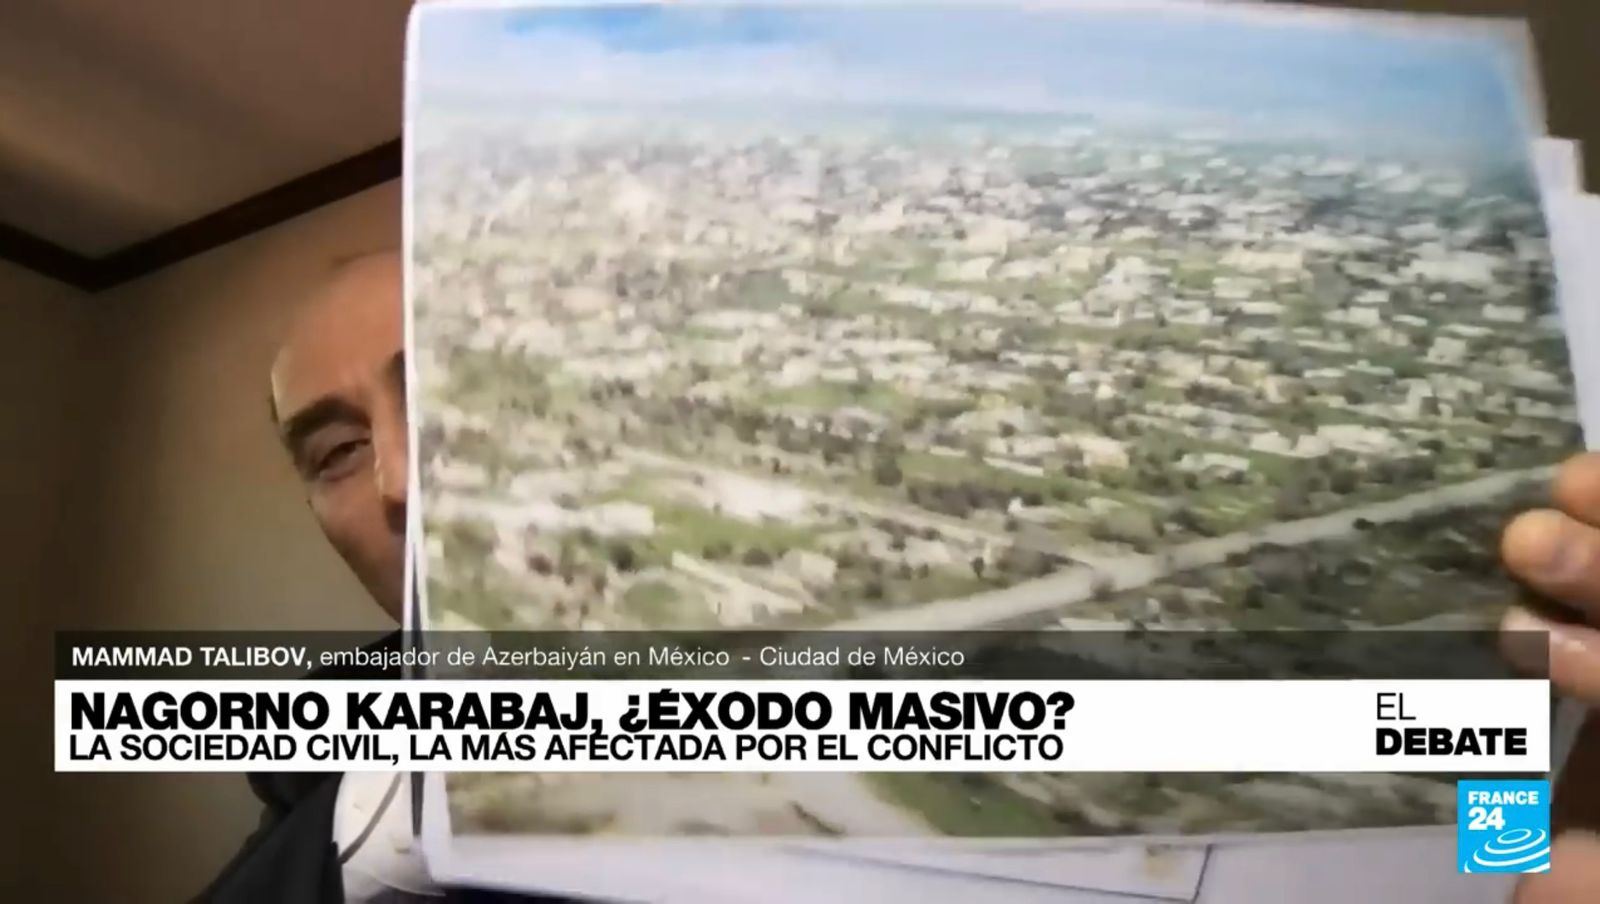 Azərbaycanlı diplomat “France 24” telekanalının efirində Ermənistan tərəfini riyakarlığa son qoyaraq sülh masasına oturmağa çağırıb (FOTO)